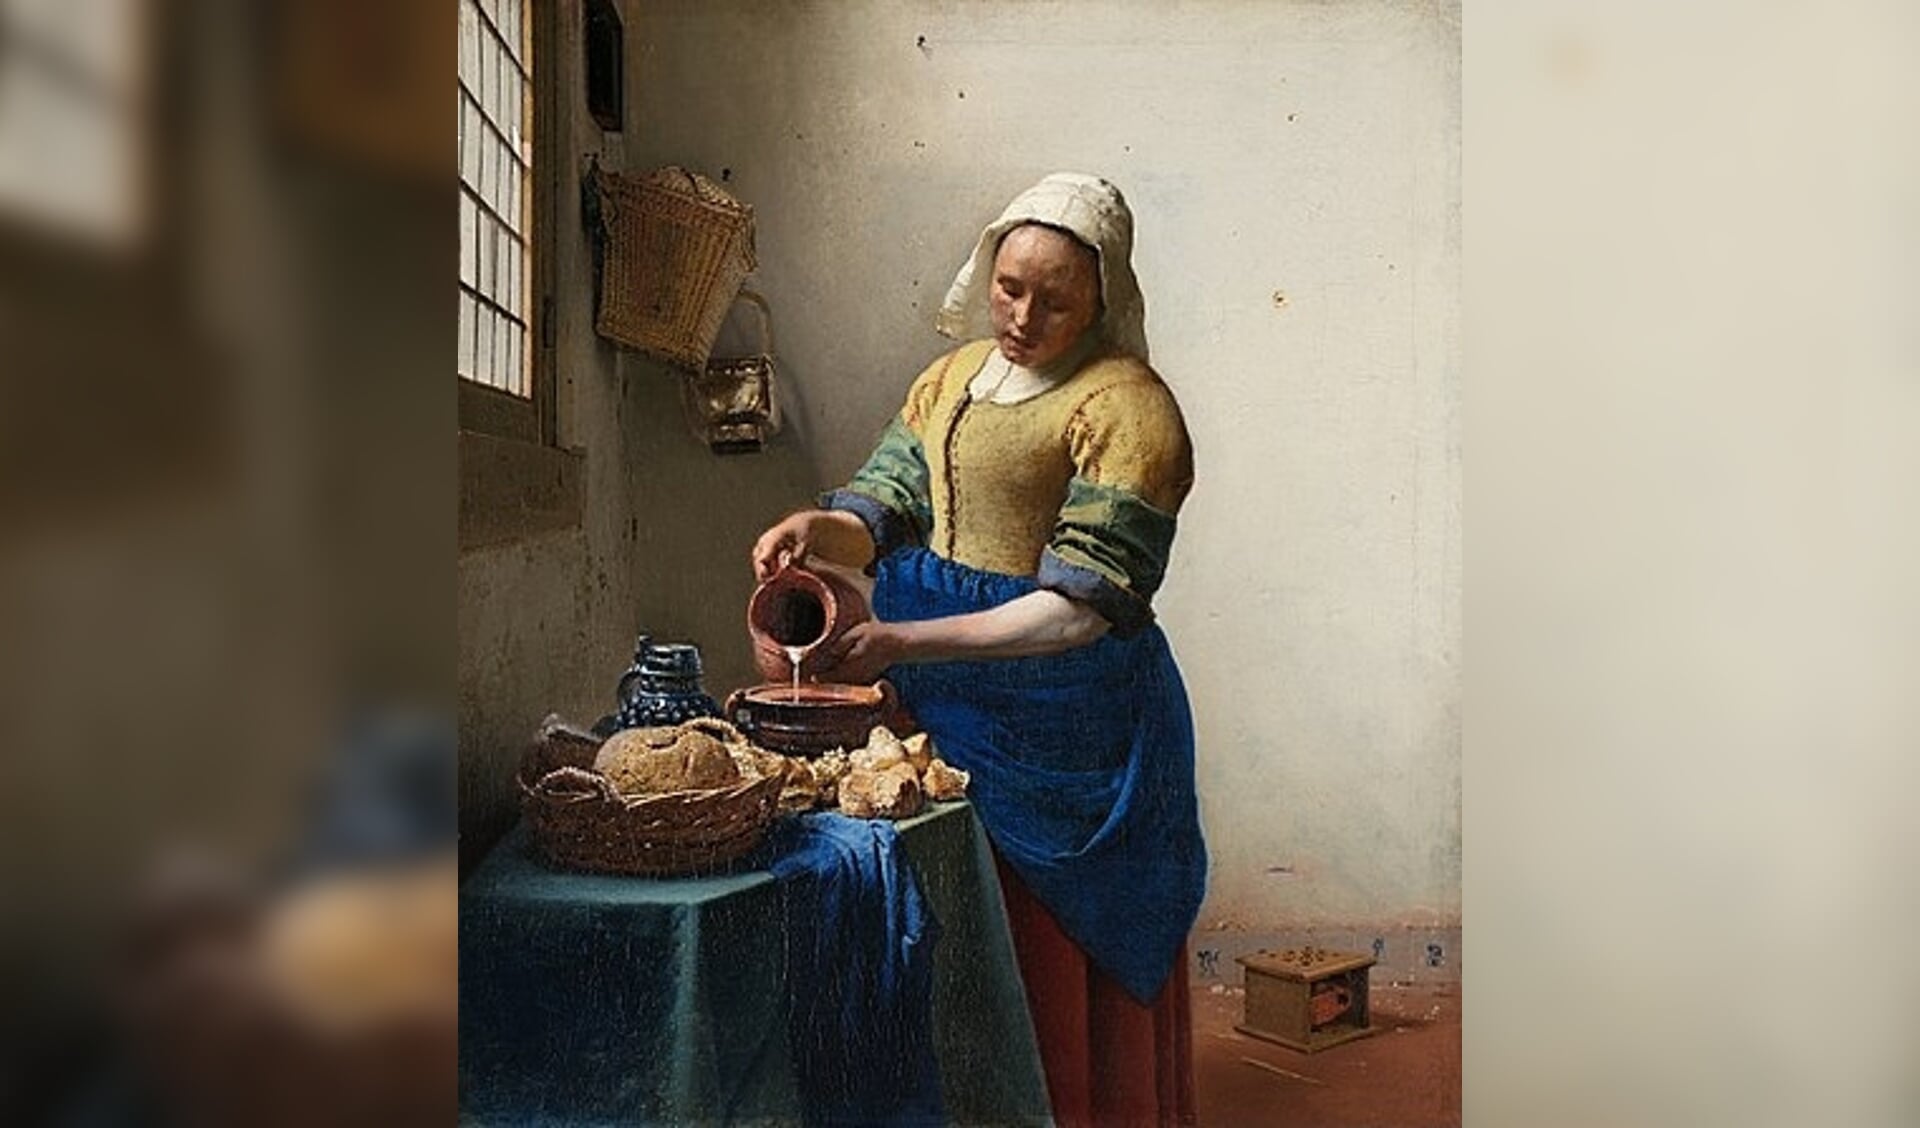 Het melkmeisje van Johannes Vermeer.